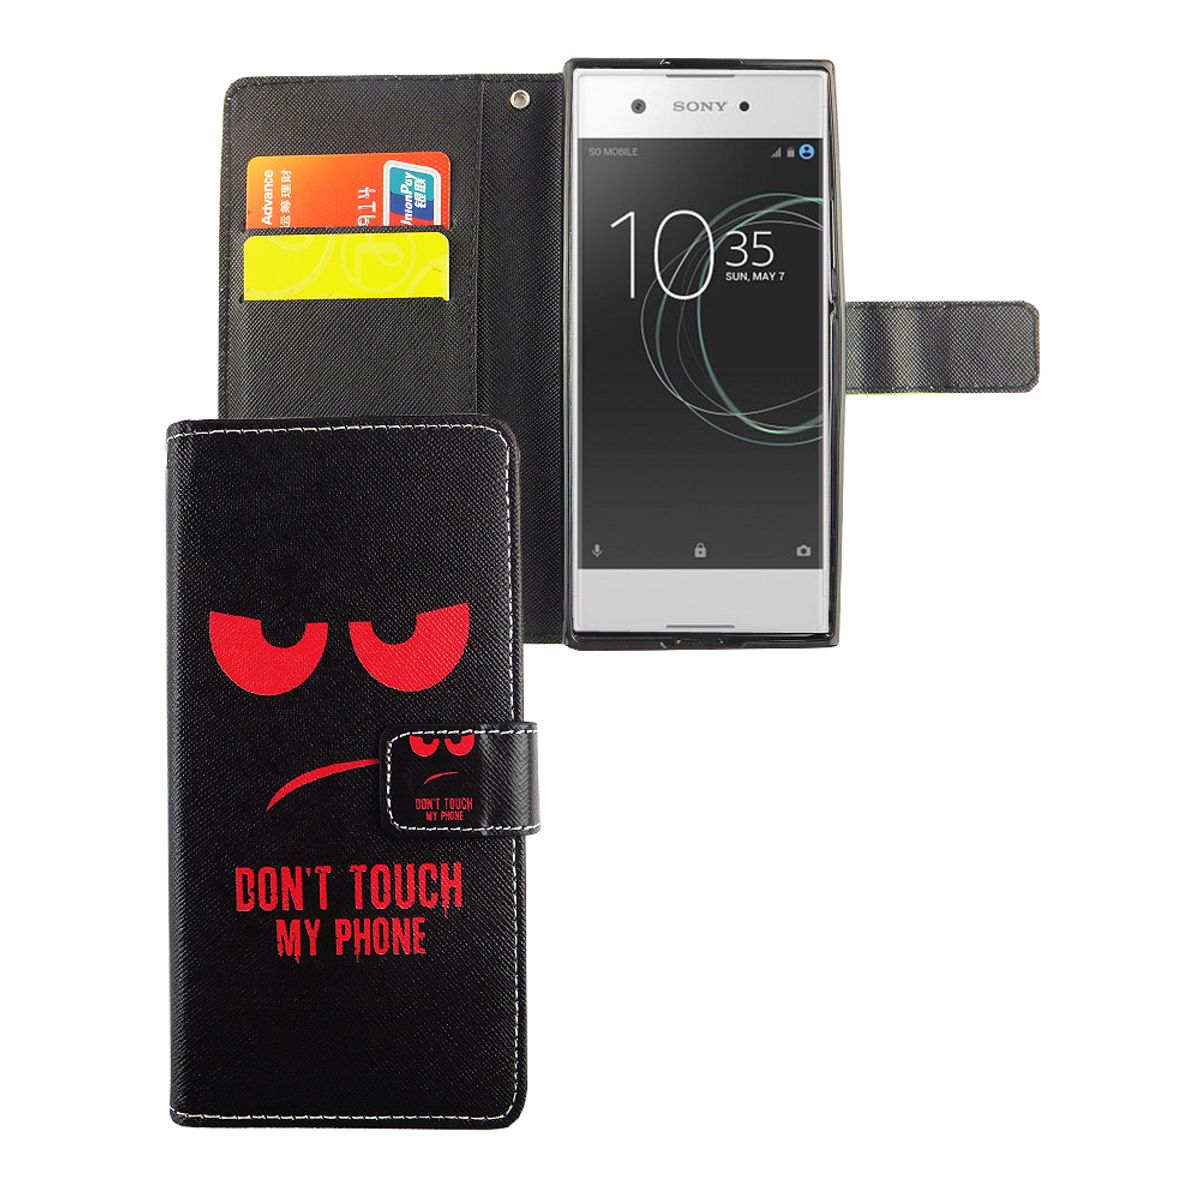 König Coque de protection design pour téléphone portable Sony Xperia XA1, étui à rabat pour smartphone Don't touch my Phone design rouge noir